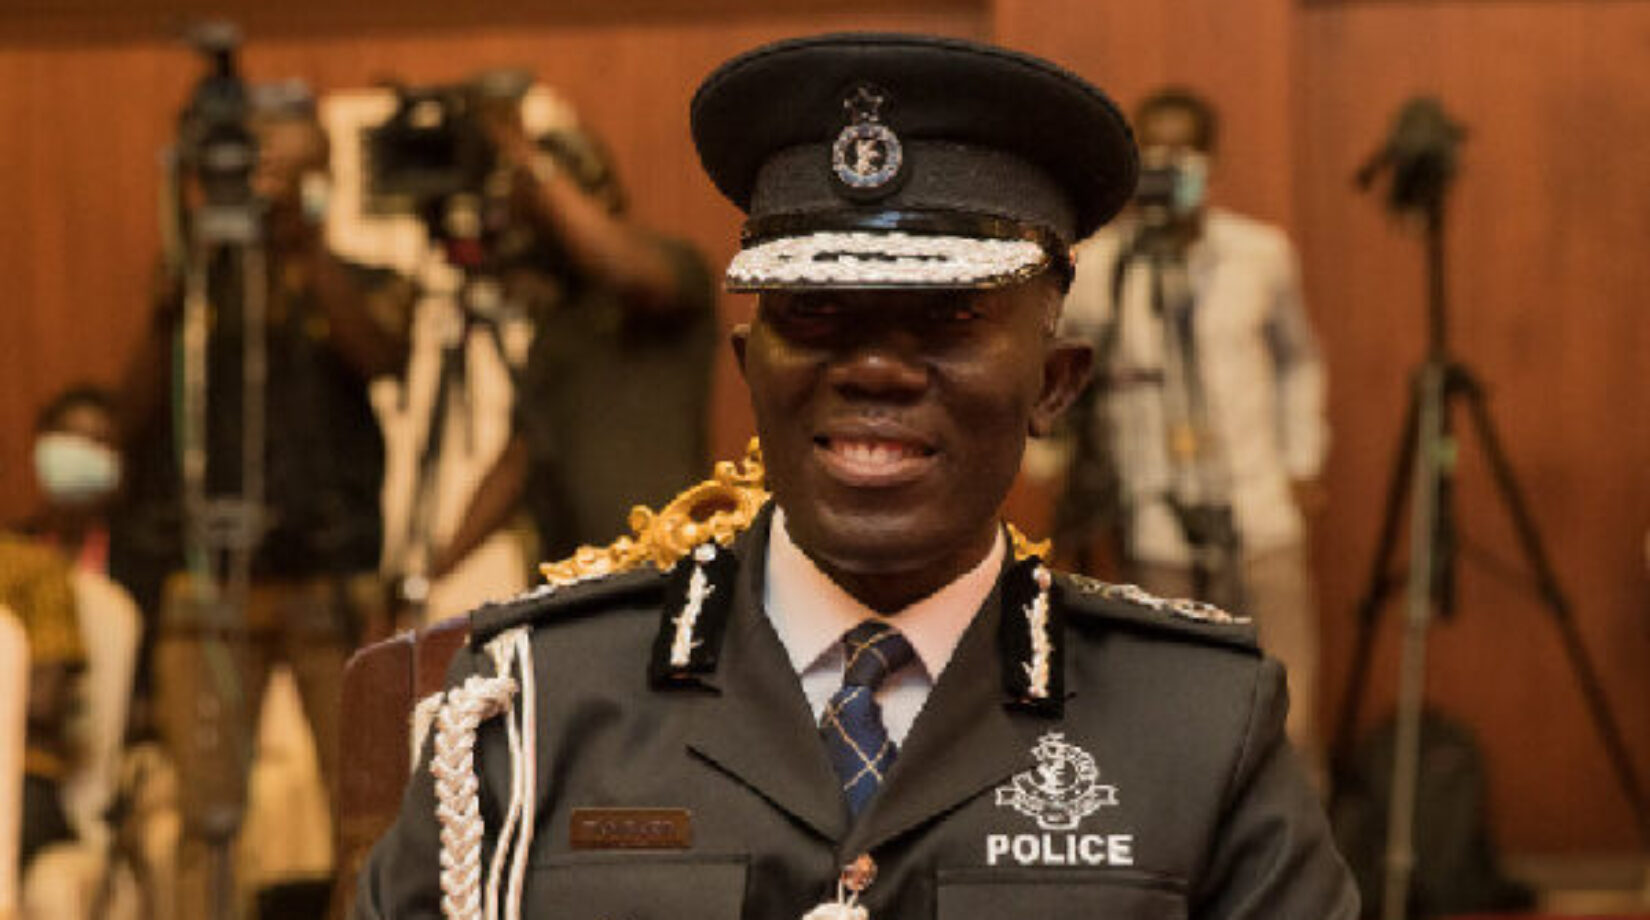 ASEPA BACKS GHANA POLICE AGAINST AFROBAROMETER CORRUPTION REPORT